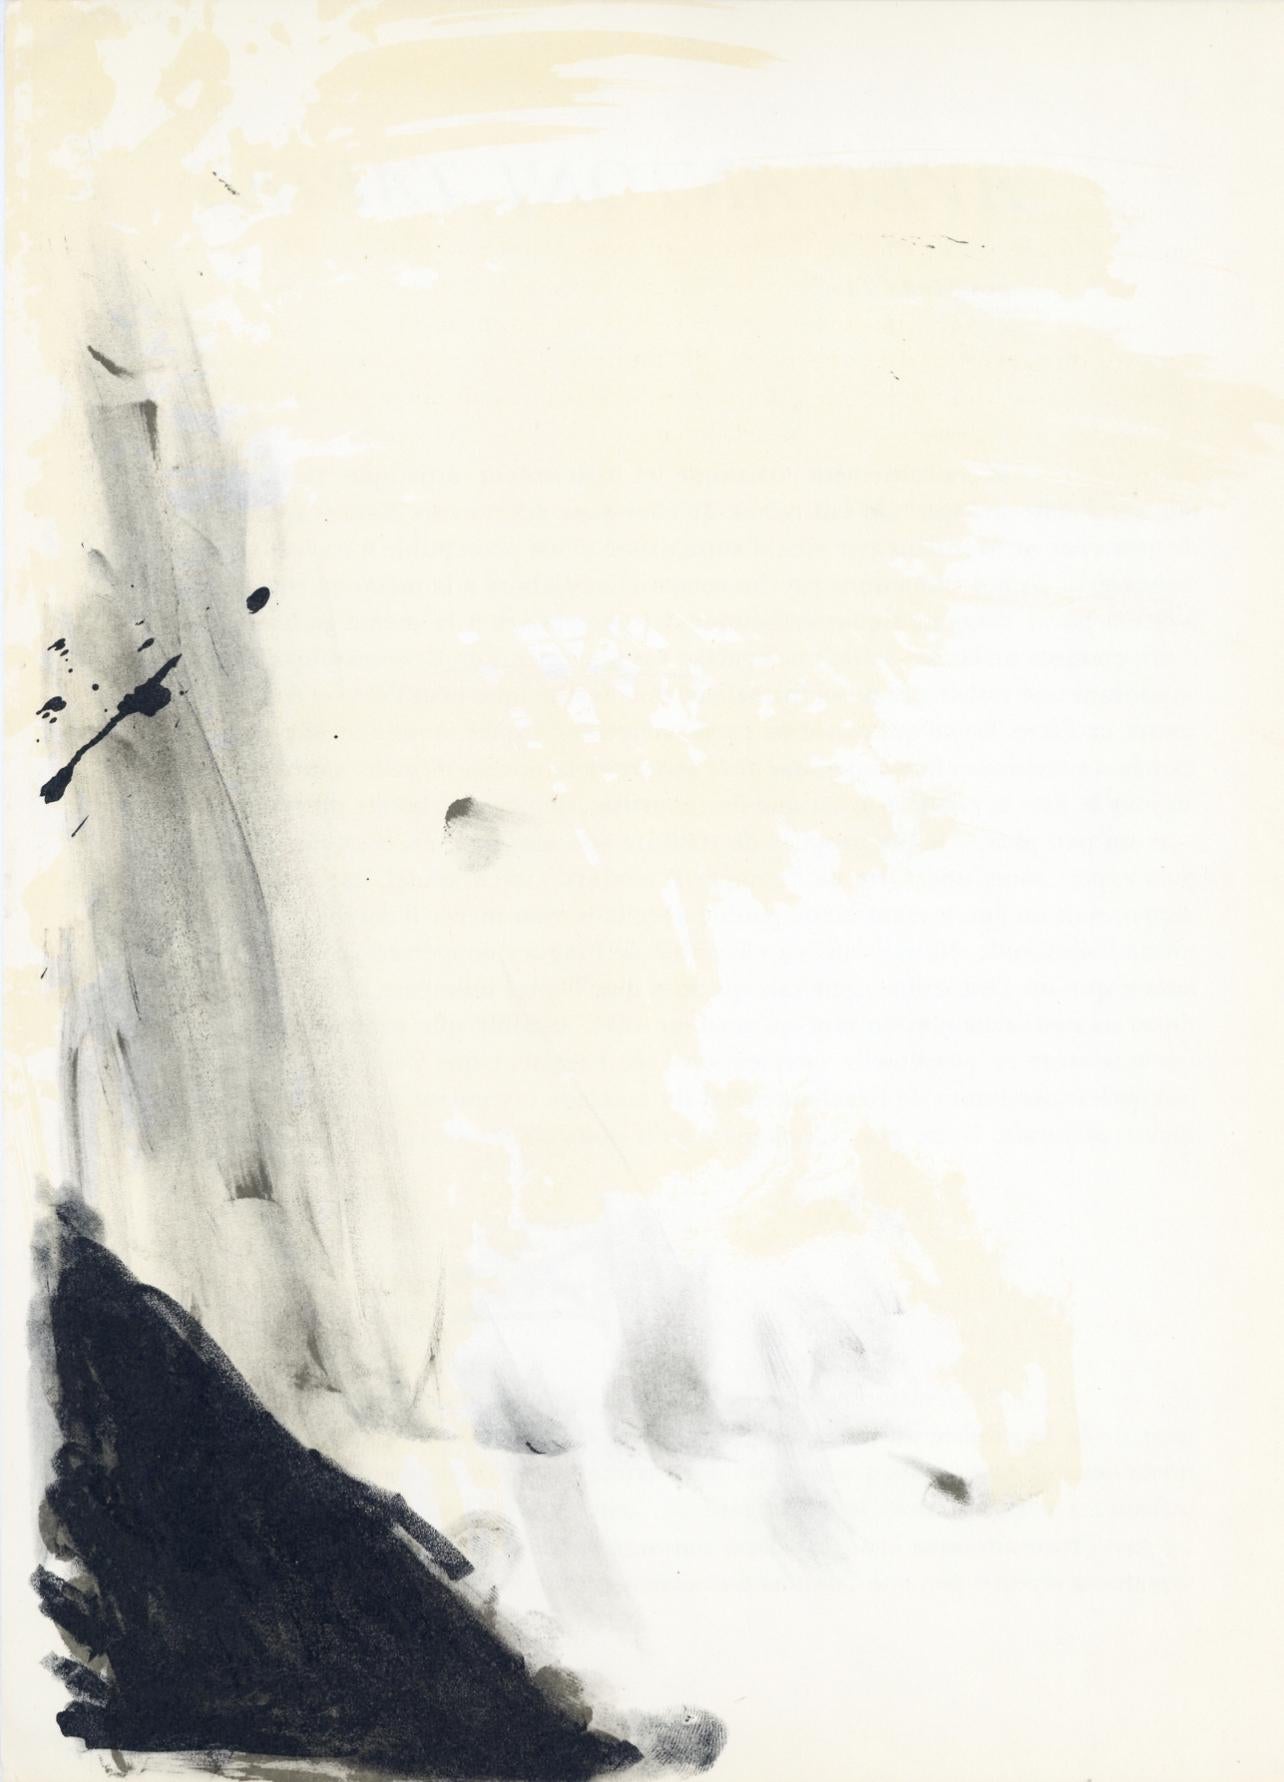 Antoni Tàpies Abstract Print - Tàpies, Composition (Galfetti 83-86), Derrière le miroir (after)